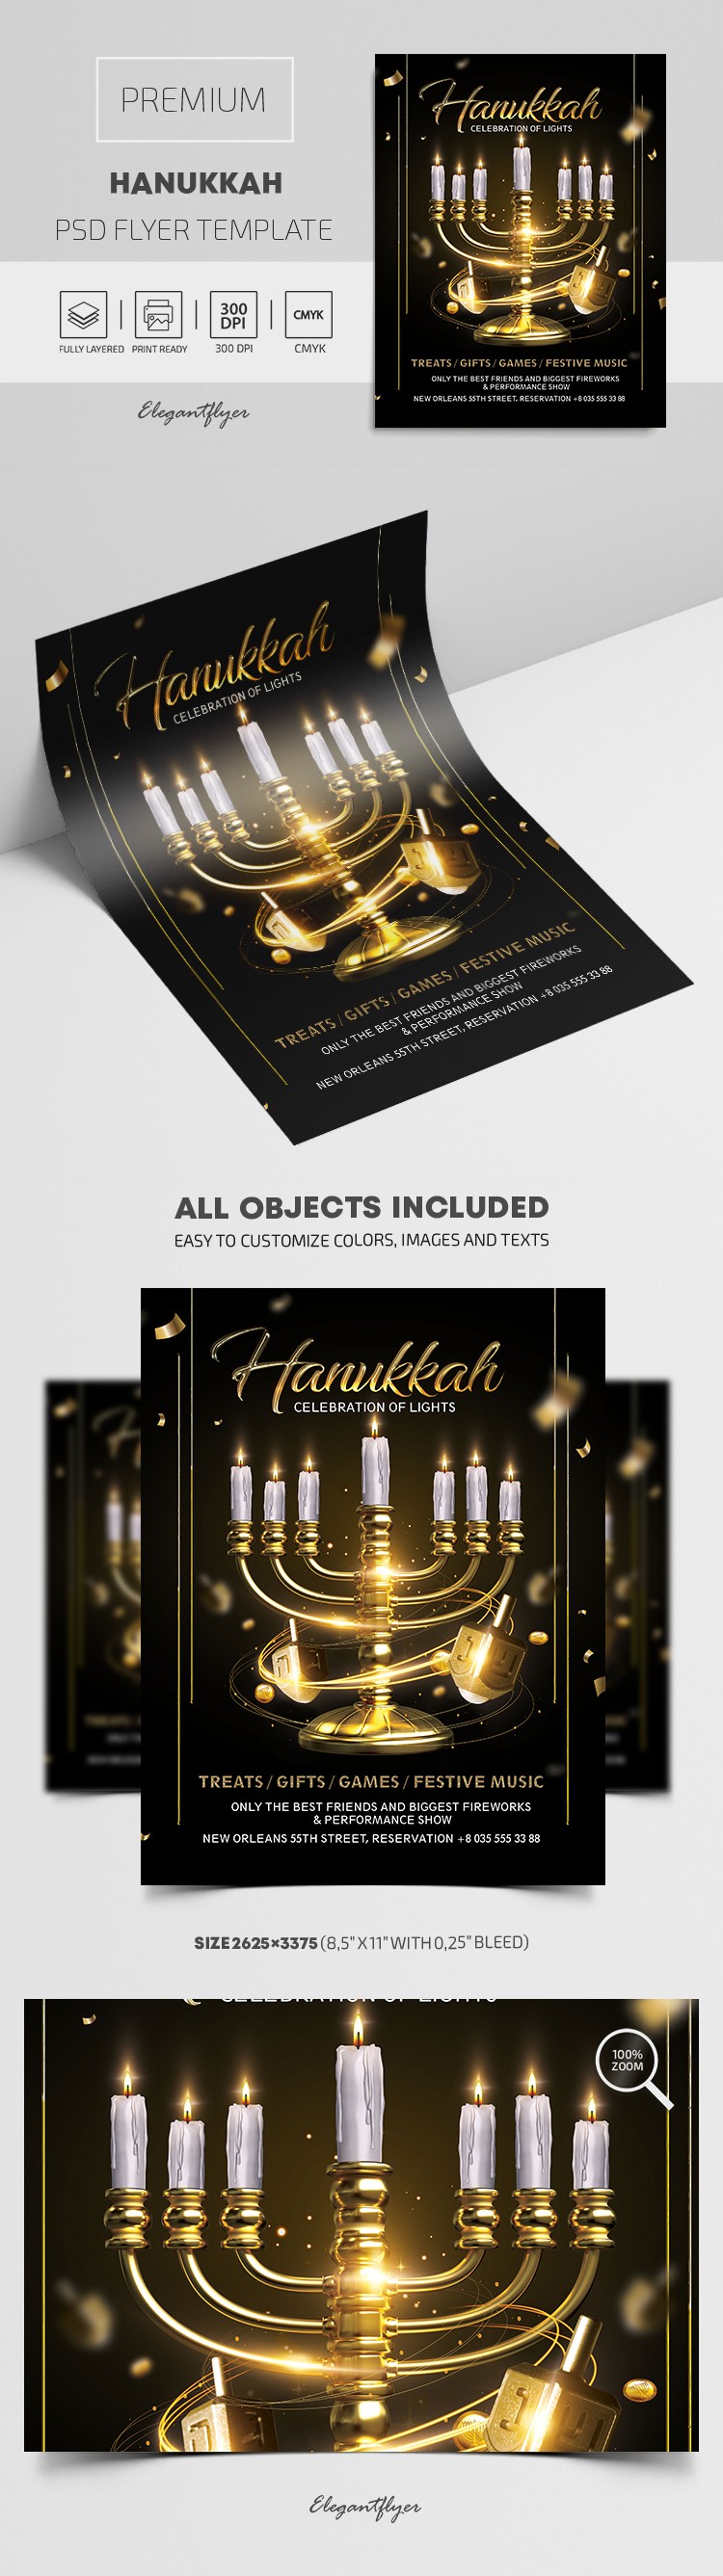 Hanukkah Flyer by ElegantFlyer